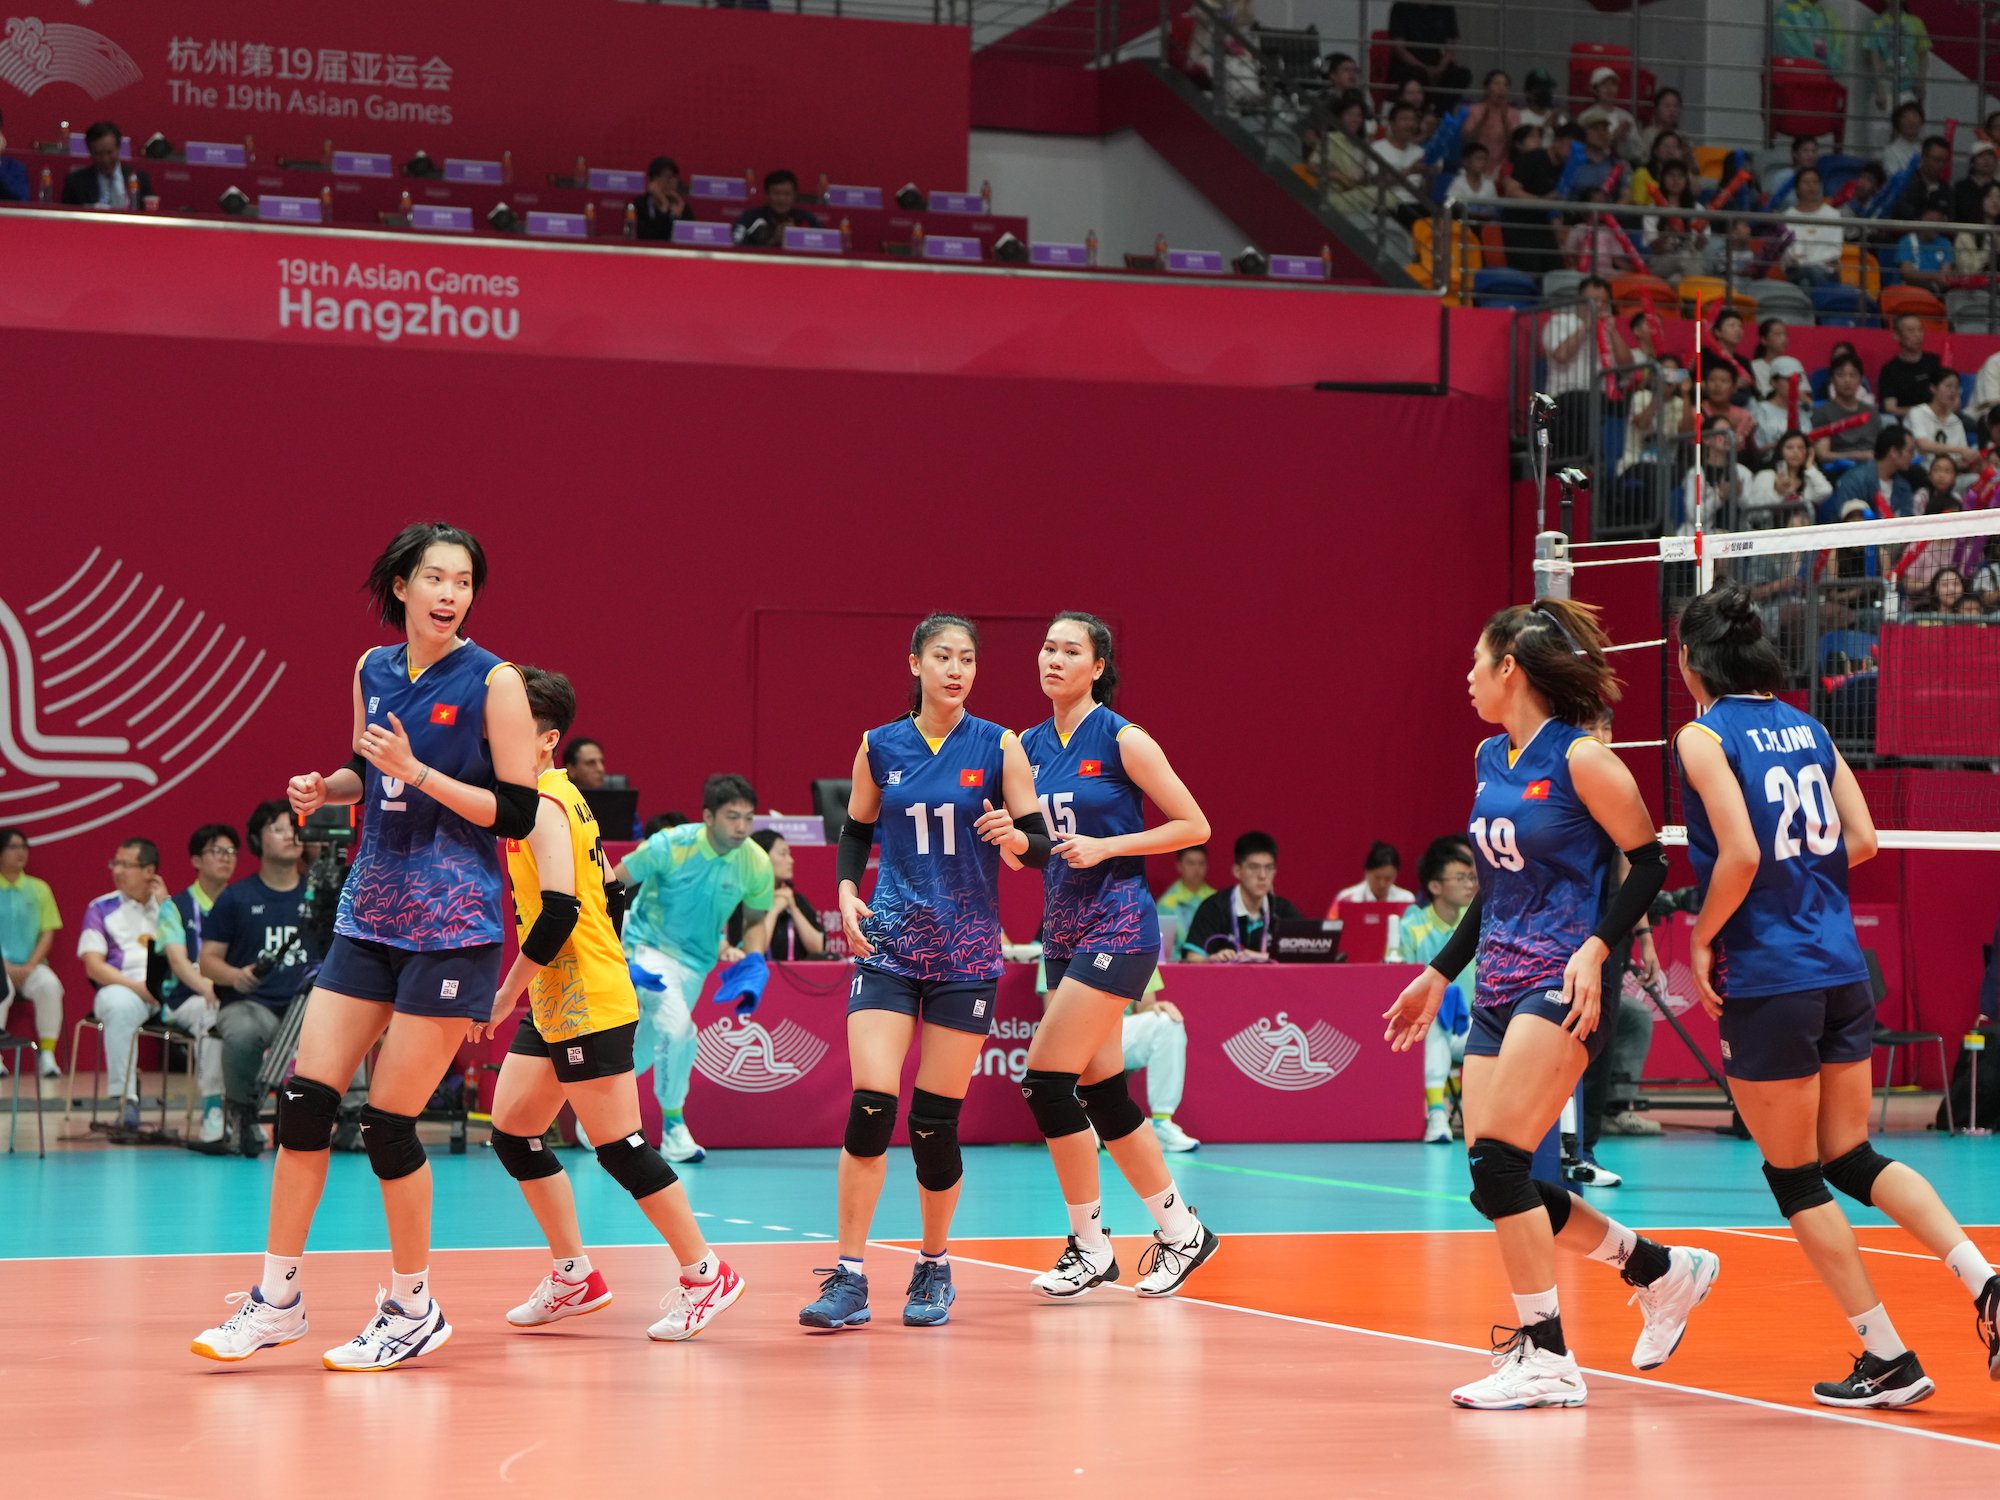 ASIAD 19: Đội tuyển bóng chuyền nữ Việt Nam thắng ngược ngoạn mục trước Hàn Quốc - Ảnh 8.